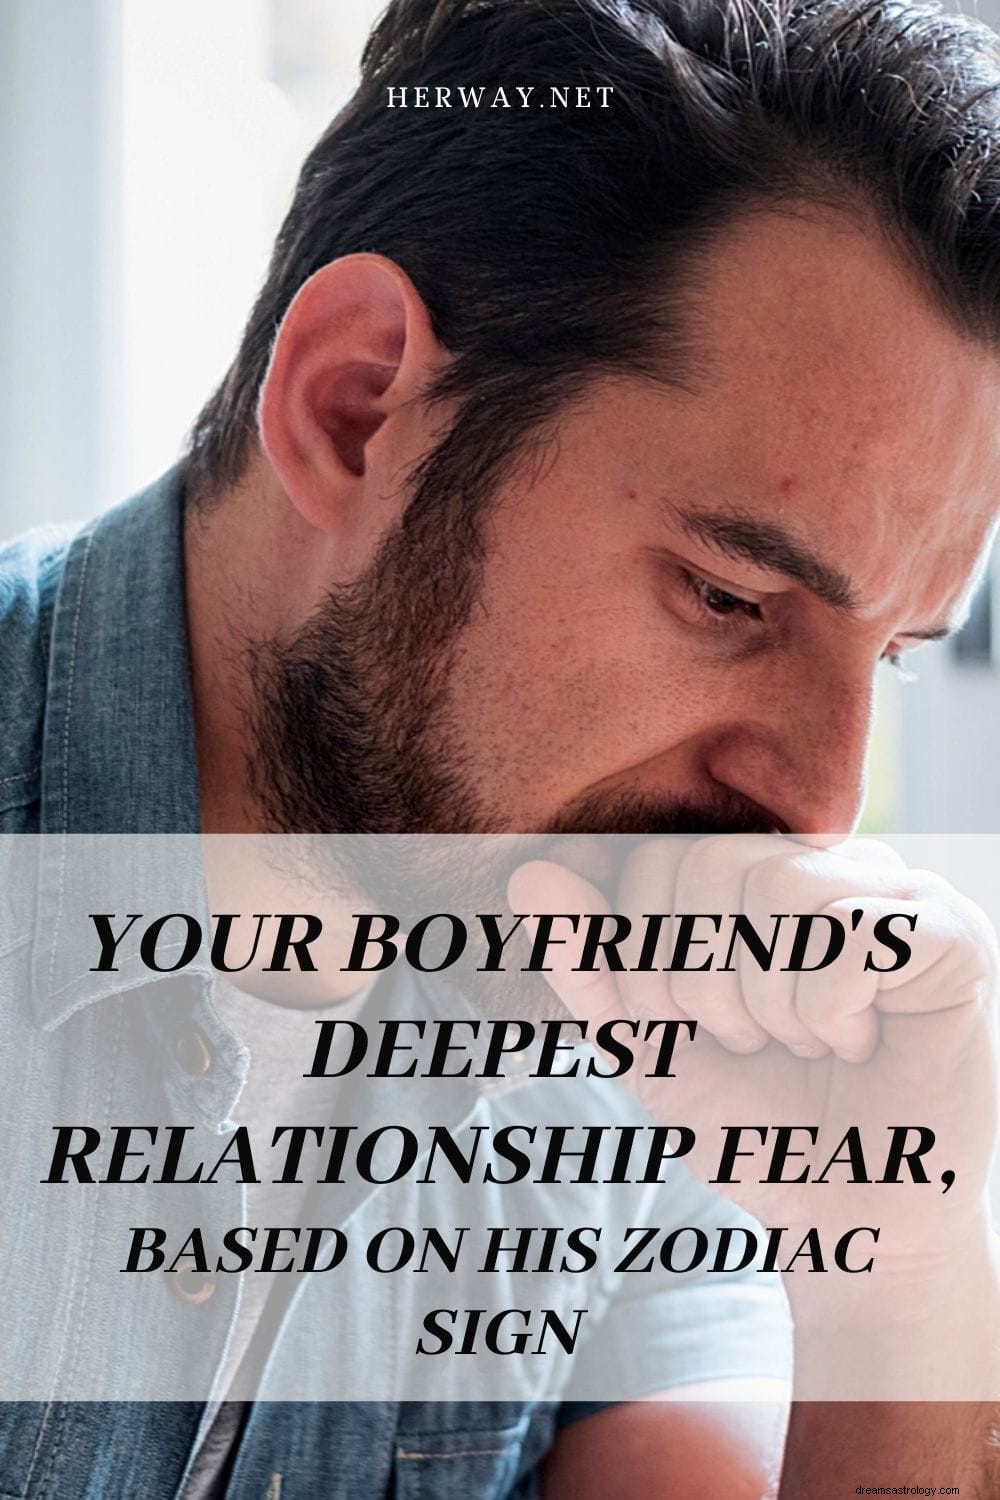 La più profonda paura di relazione del tuo ragazzo, basata sul suo segno zodiacale